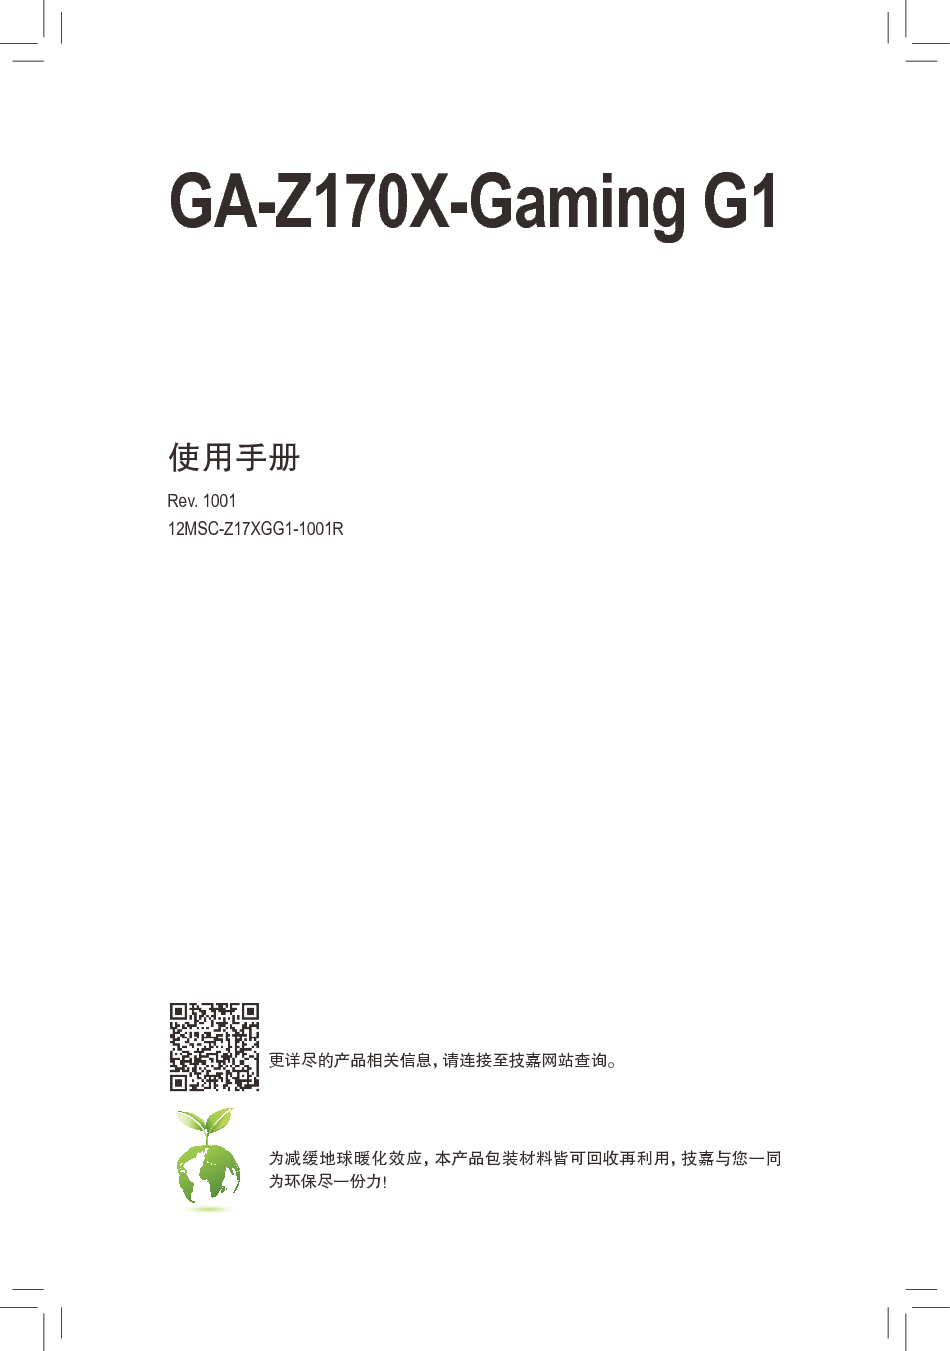 技嘉 Gigabyte GA-Z170X-Gaming G1 1001版 使用手册 封面